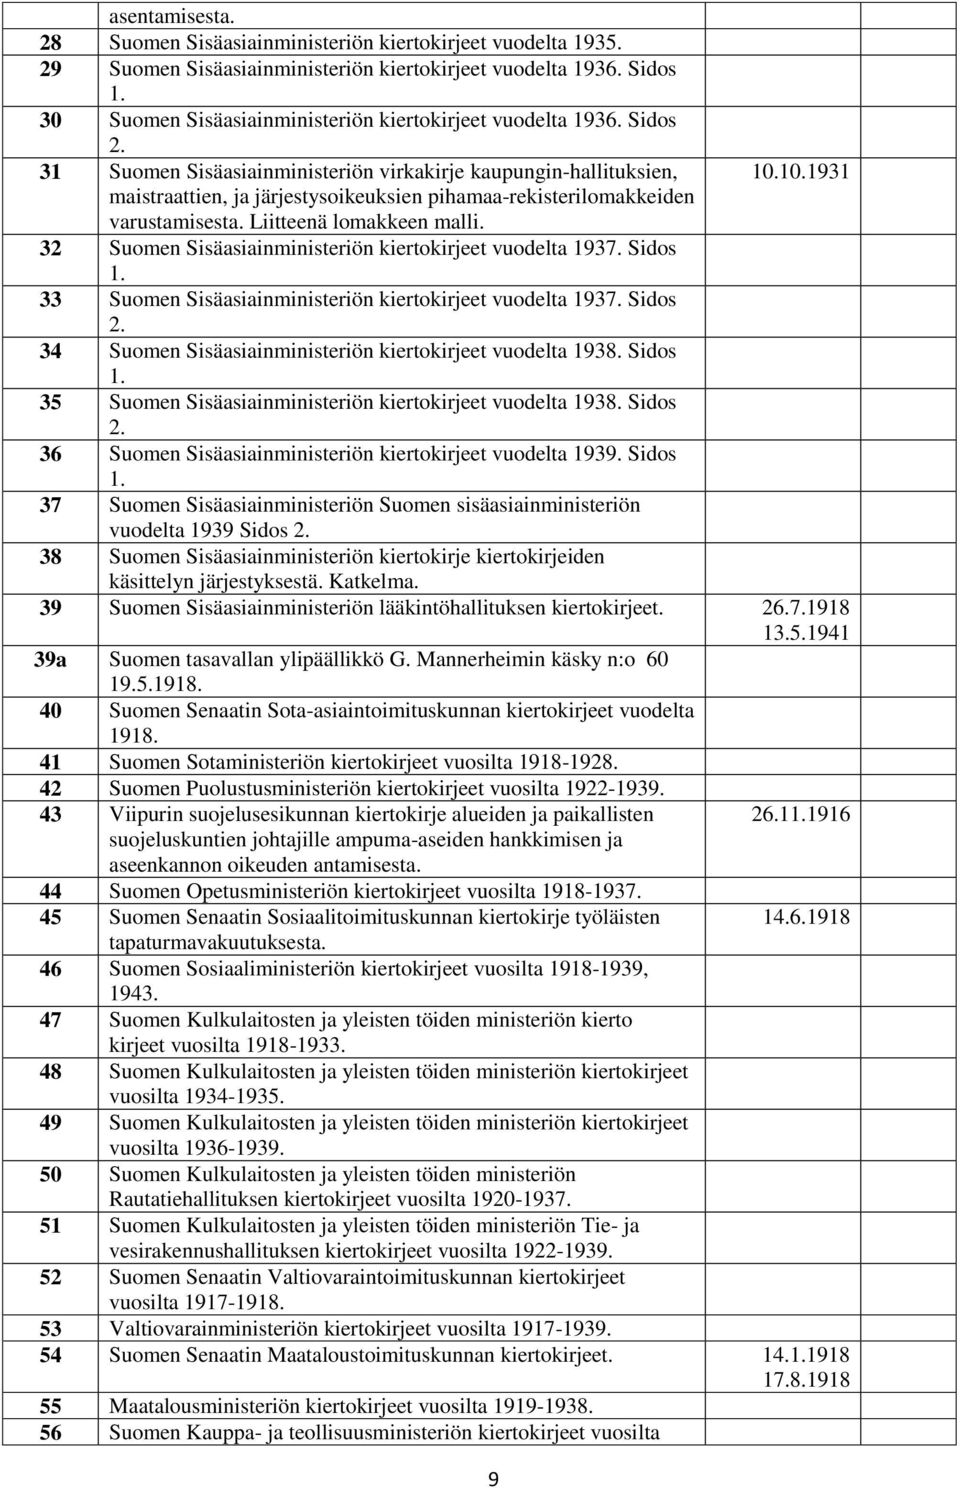 31 Suomen Sisäasiainministeriön virkakirje kaupungin-hallituksien, maistraattien, ja järjestysoikeuksien pihamaa-rekisterilomakkeiden varustamisesta. Liitteenä lomakkeen malli. 9 10.